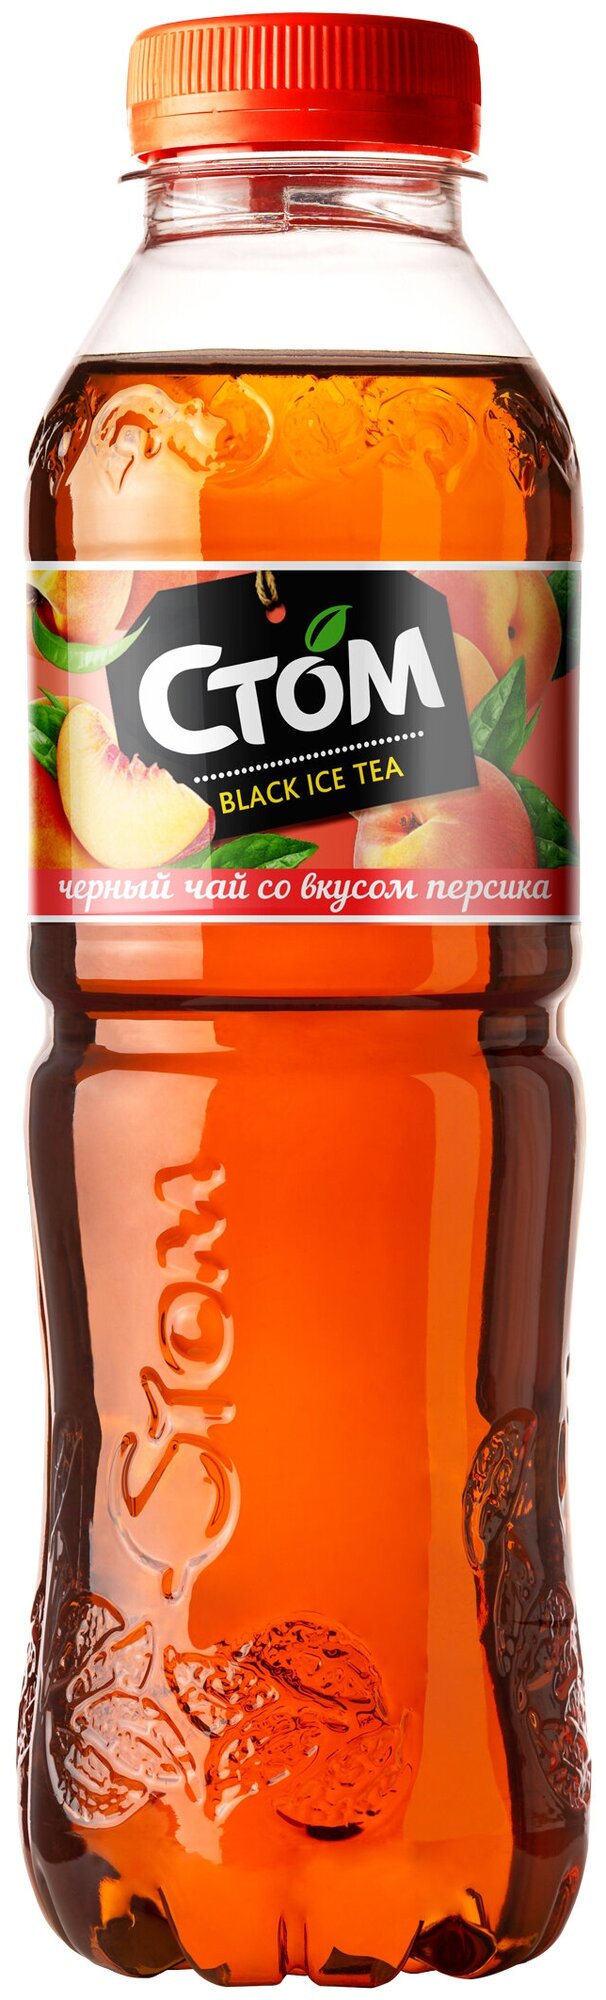 Холодный чай черный со вкусом Персика стом (12 шт) 0,5 л - фотография № 1